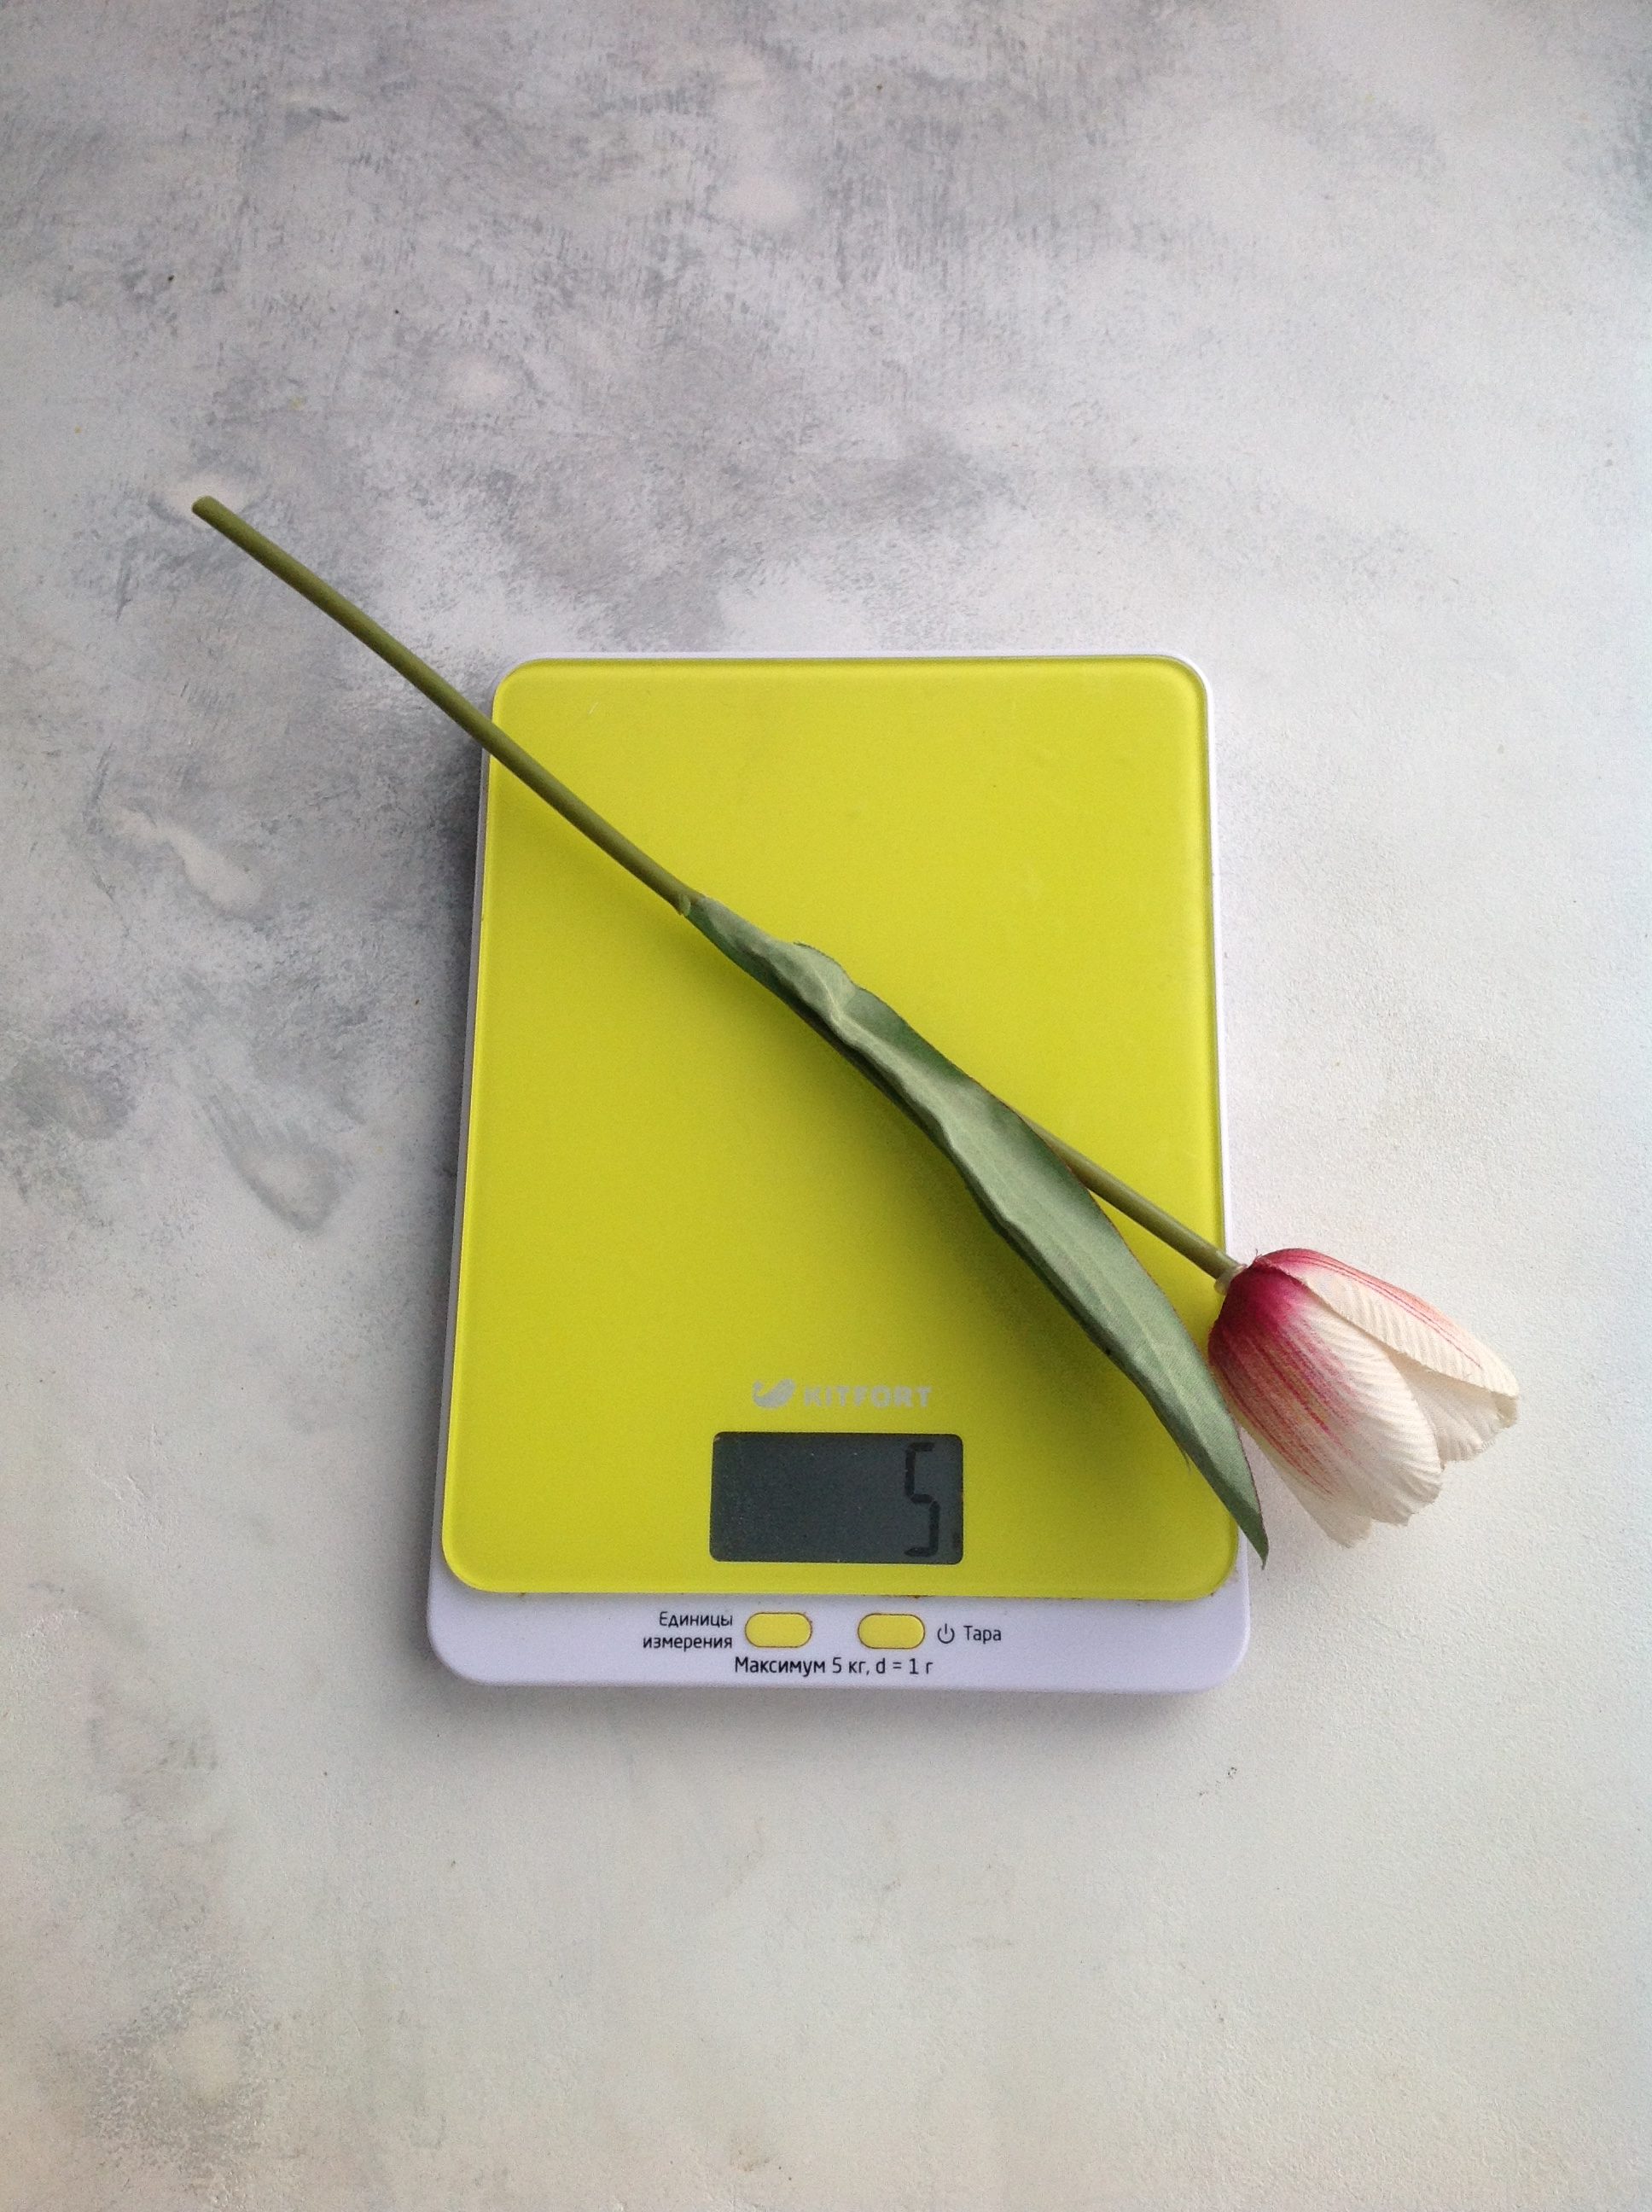 weight of an artificial tulip flower